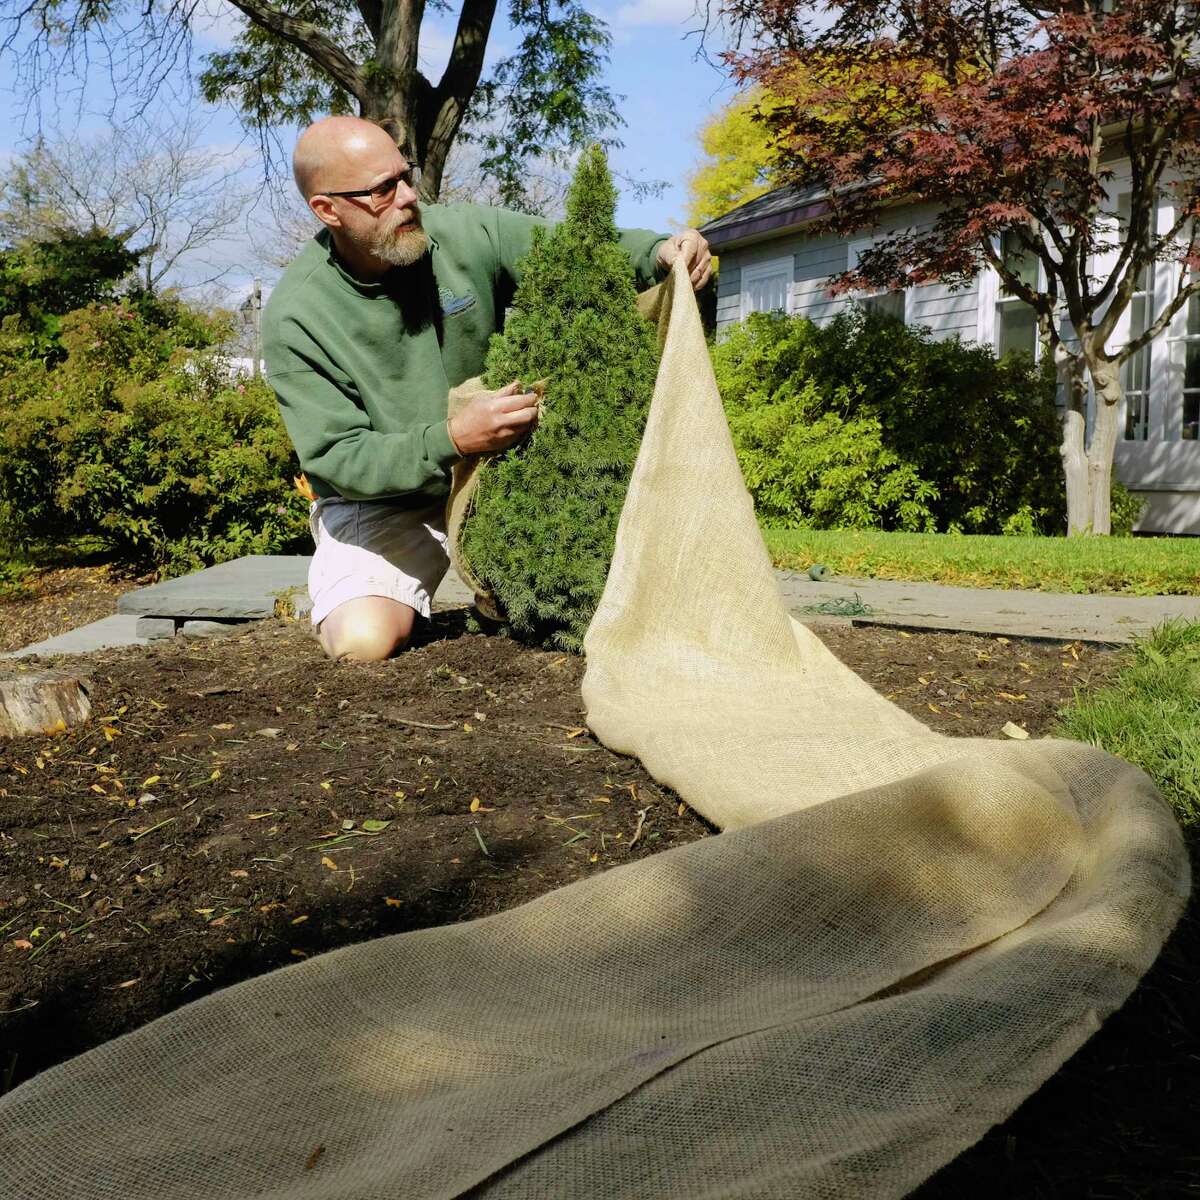 Jason Schultz, a garden designer at Faddegon's, wraps up a dwarf Alberta spruce on Tuesday, Oct. 6, 2020, in Latham, N.Y. (Paul Buckowski/Times Union)